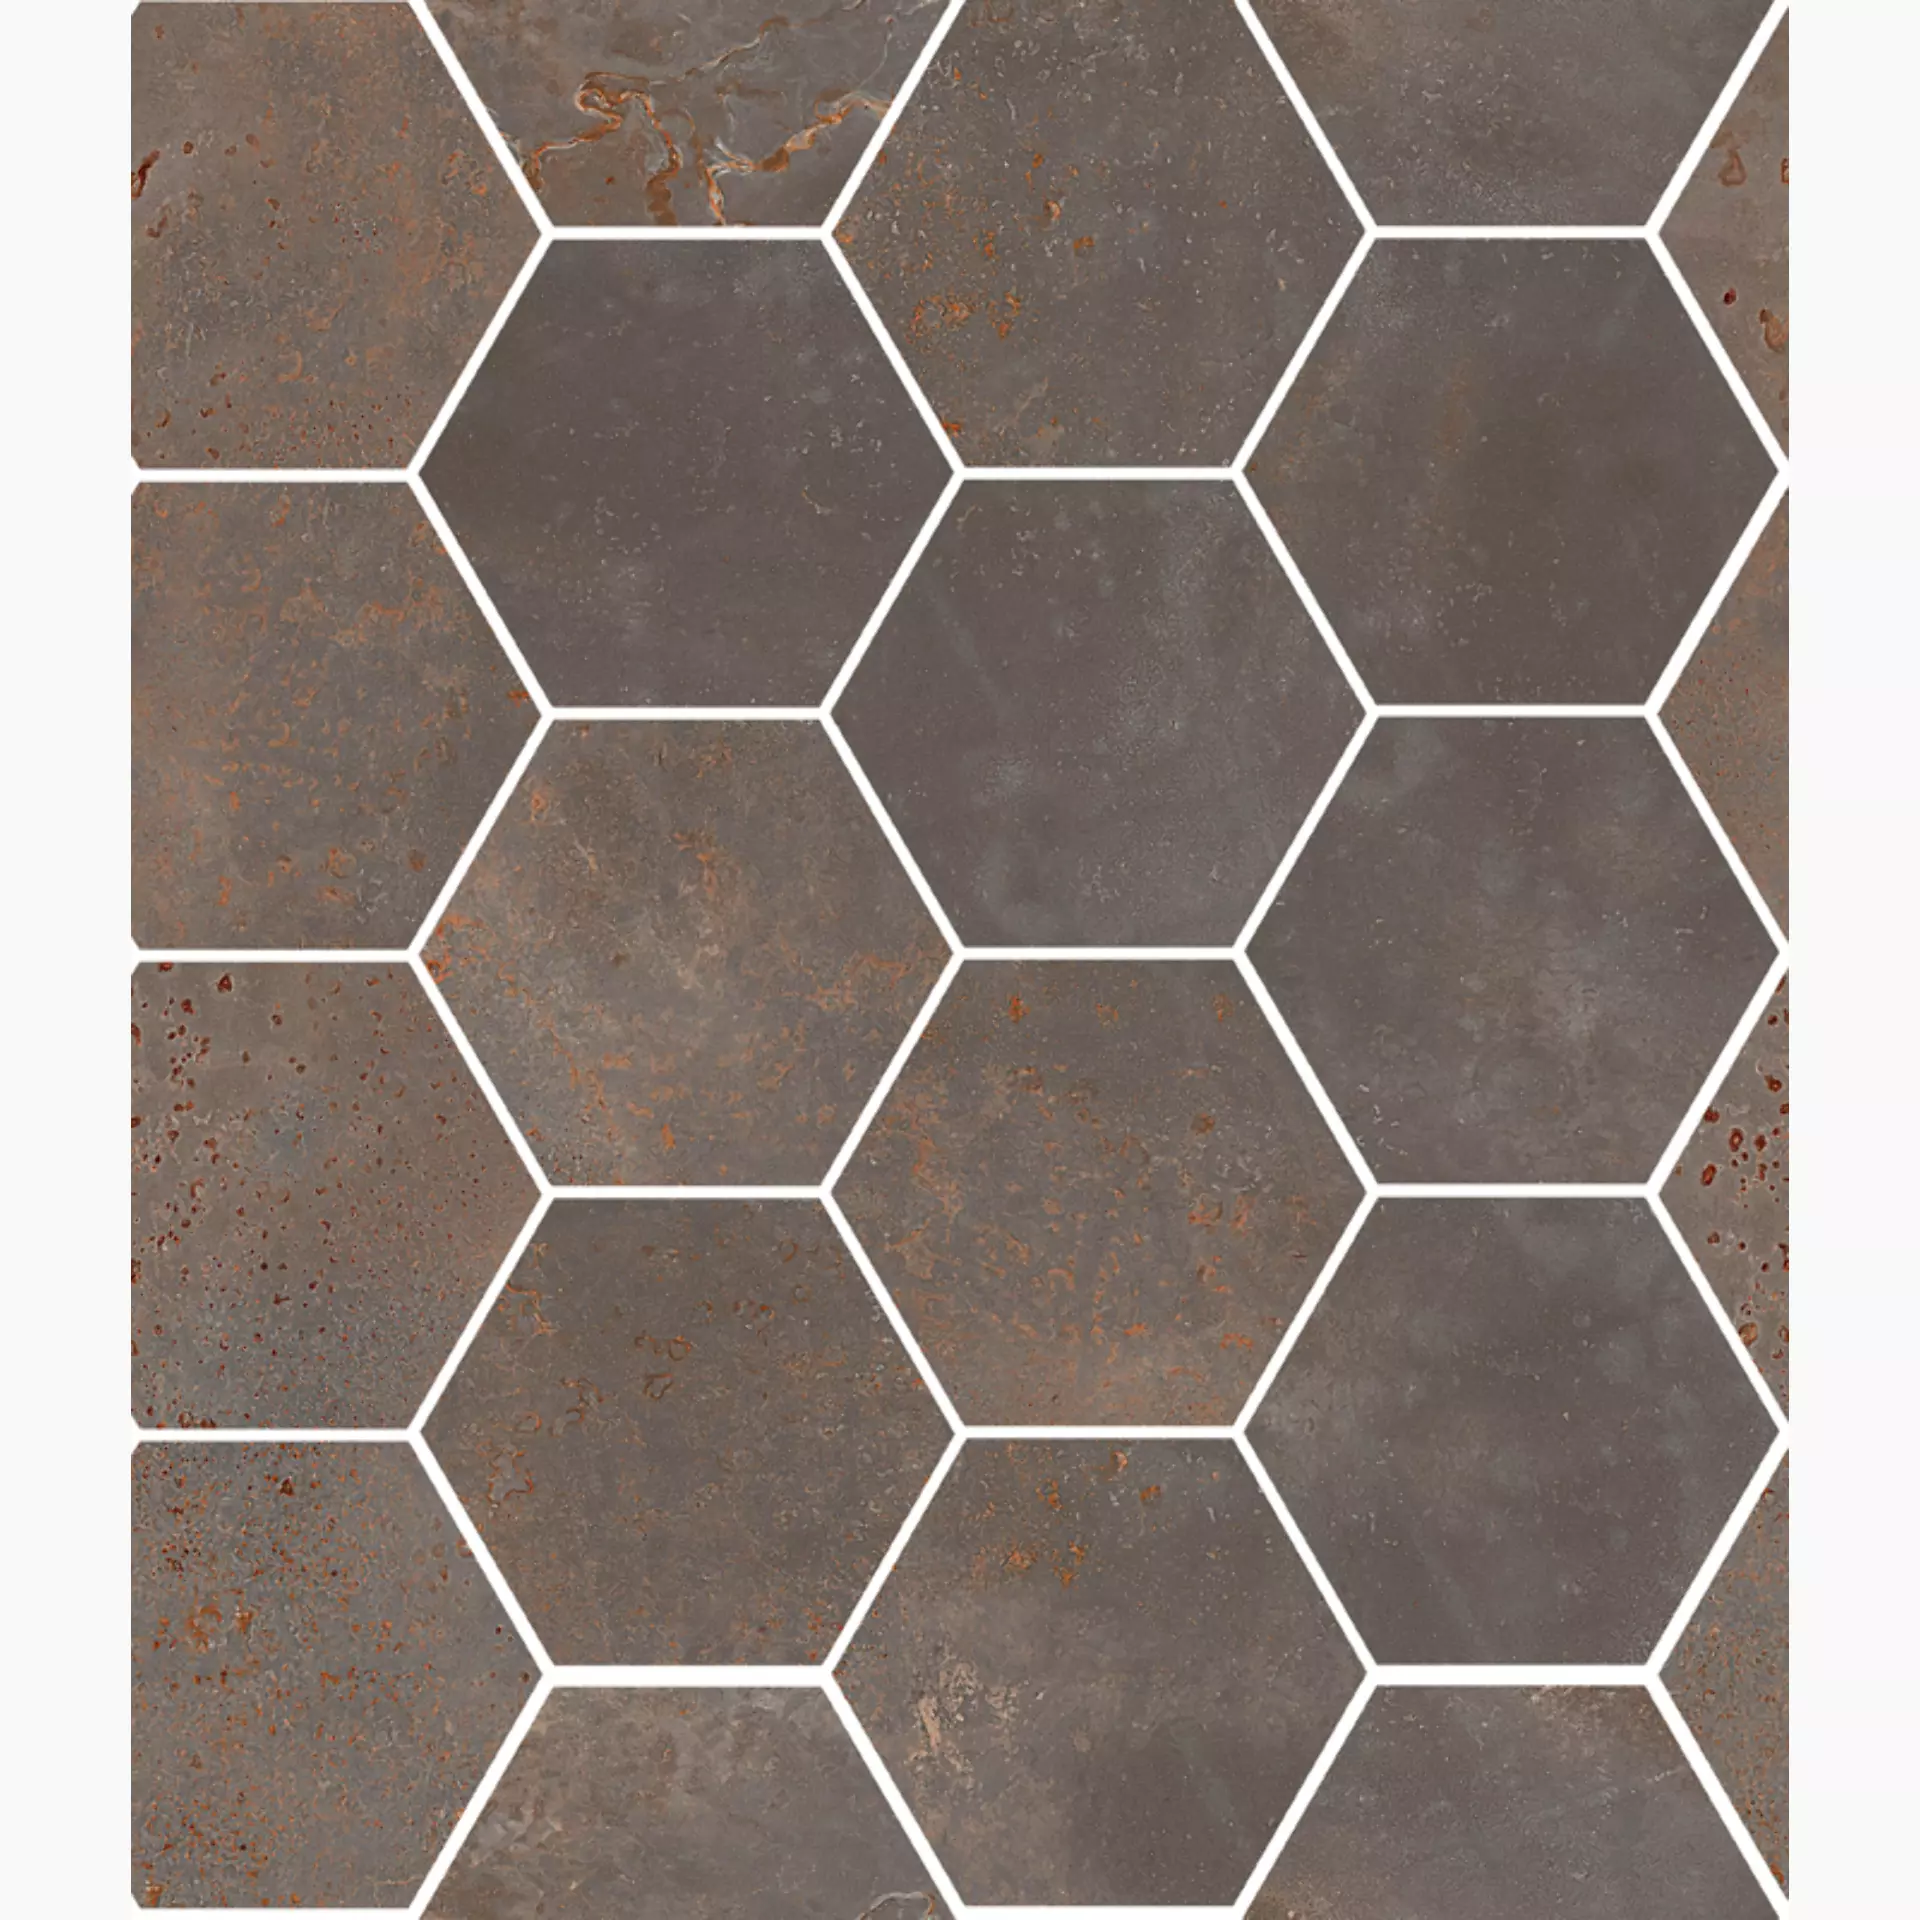 Sant Agostino Oxidart Iron Natural Hexagon CSAHOXIR26 26x30cm rectified 10mm